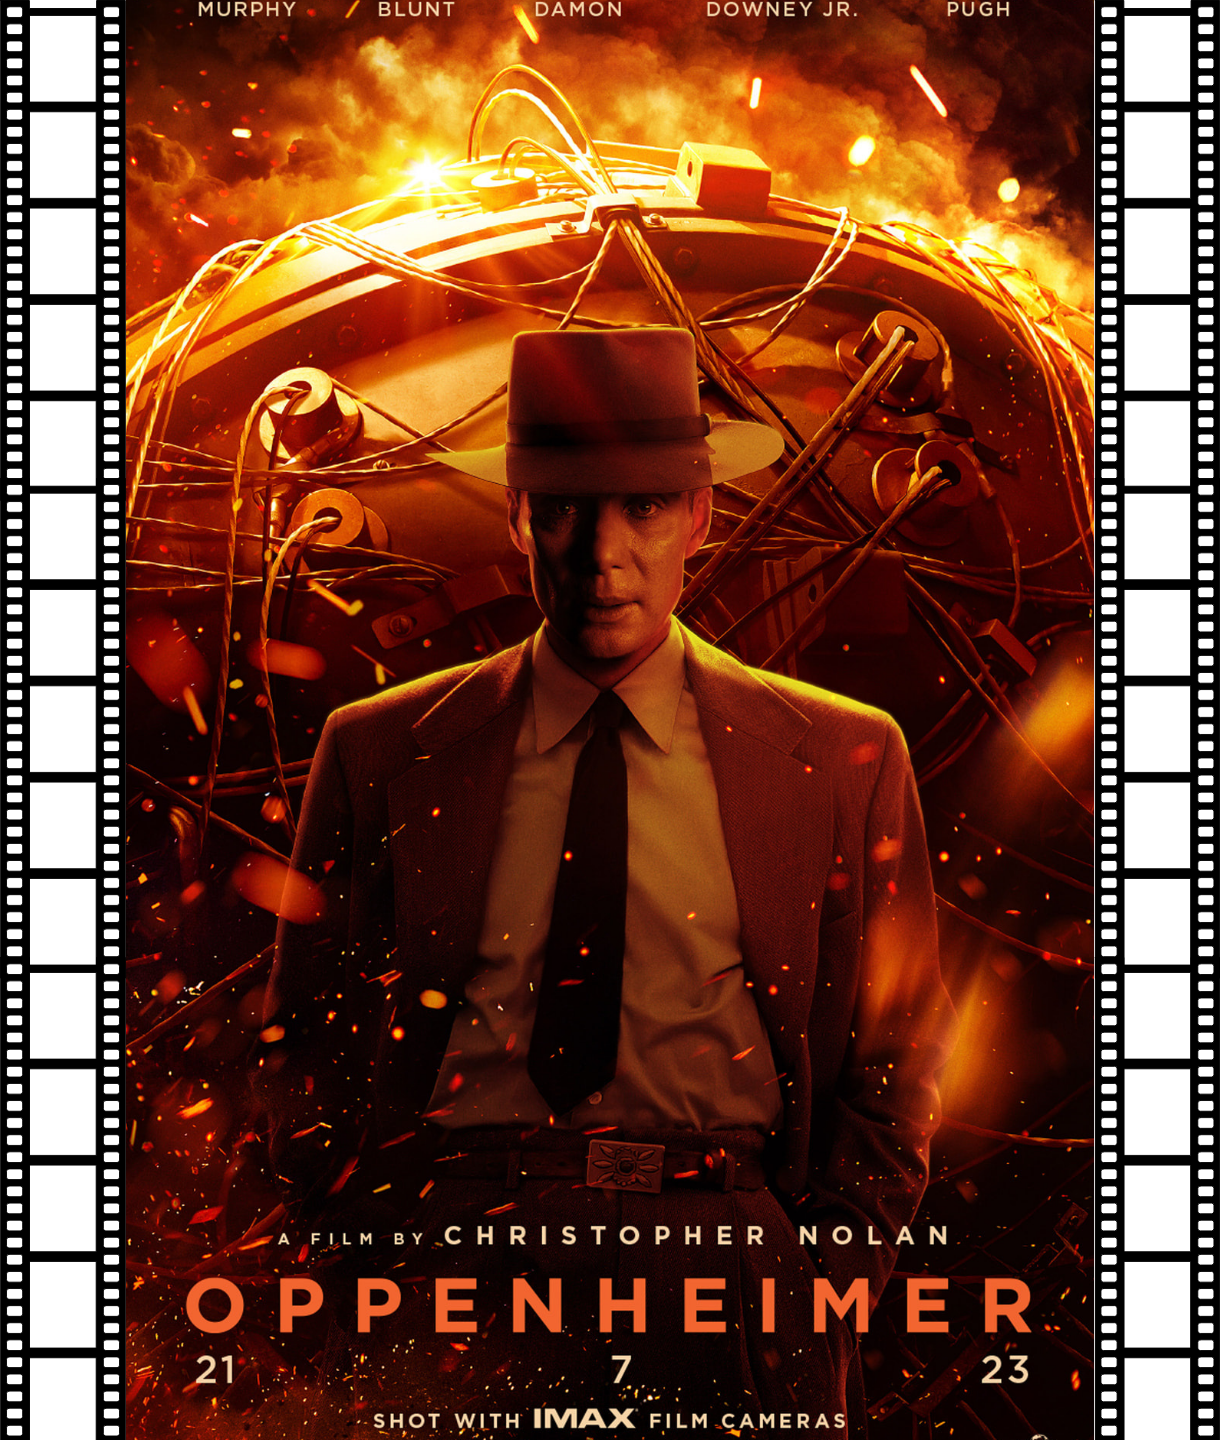 Oppenheimer (12) Poster Image